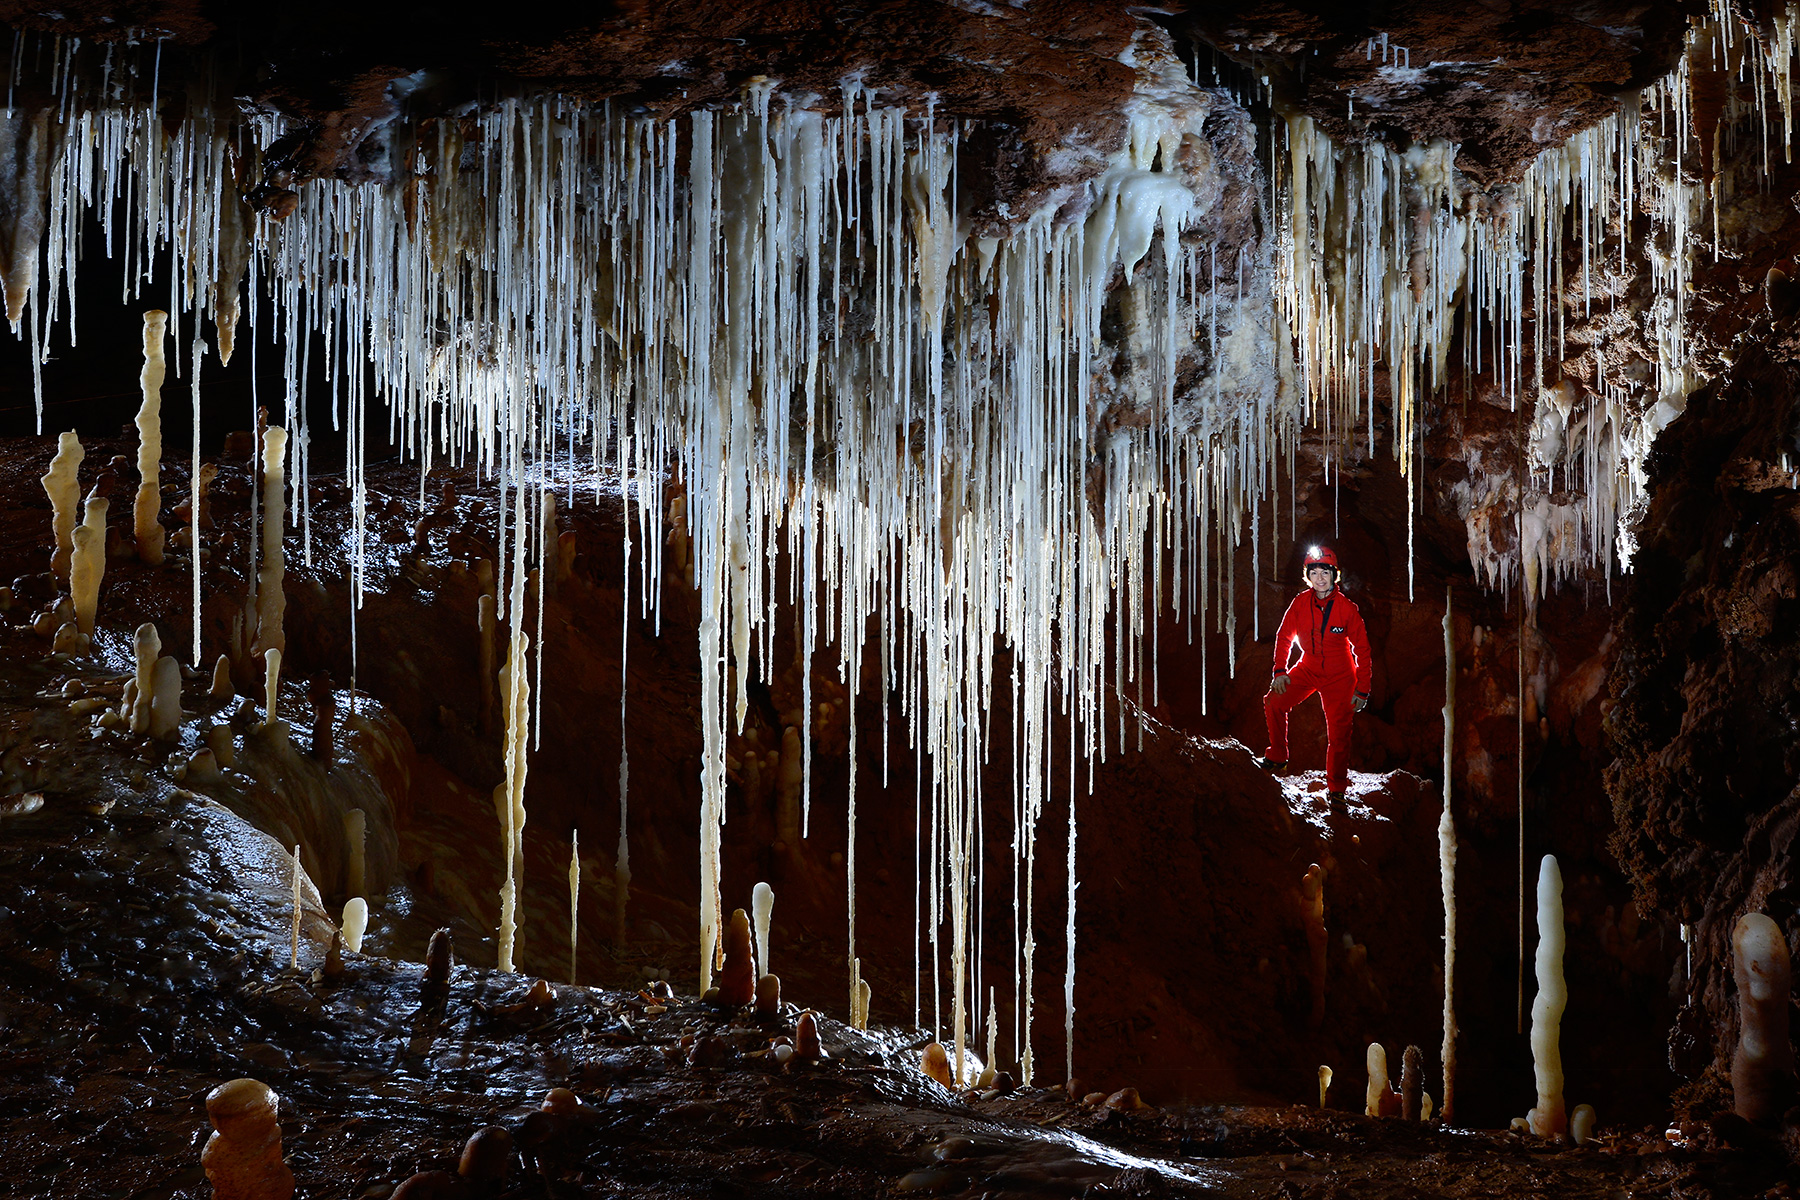 Grotte de Clamouse - Ensemble de fistuleuses translucides en contre-jour (avec spéléo en arrière plan).